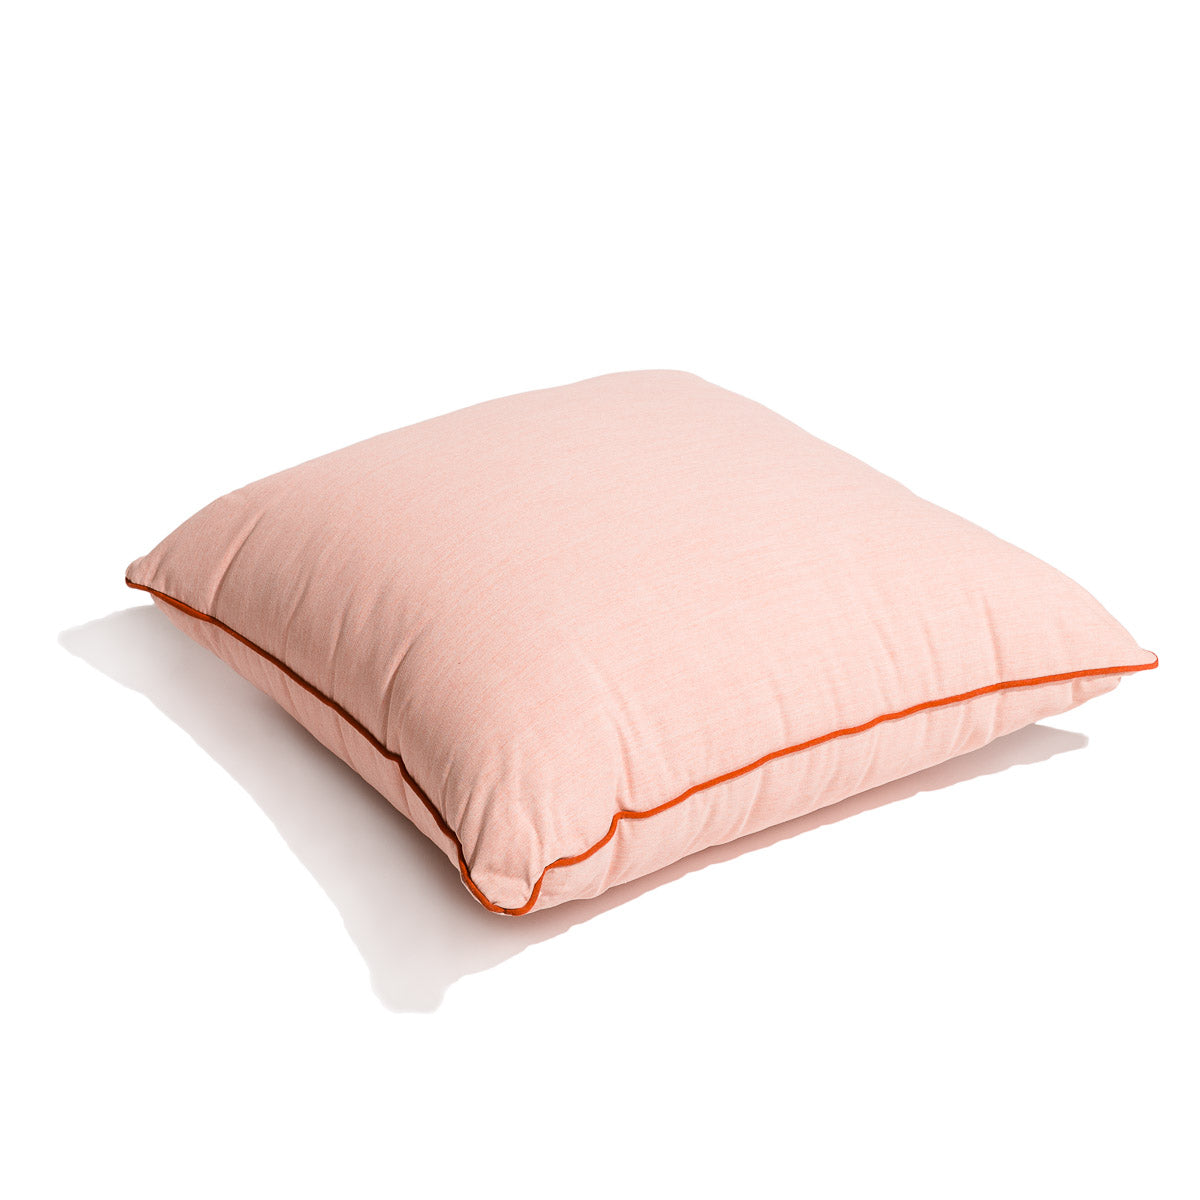 The Euro Throw Pillow - Rivie Pink Euro Throw Pillow Business & Pleasure Co Aus 